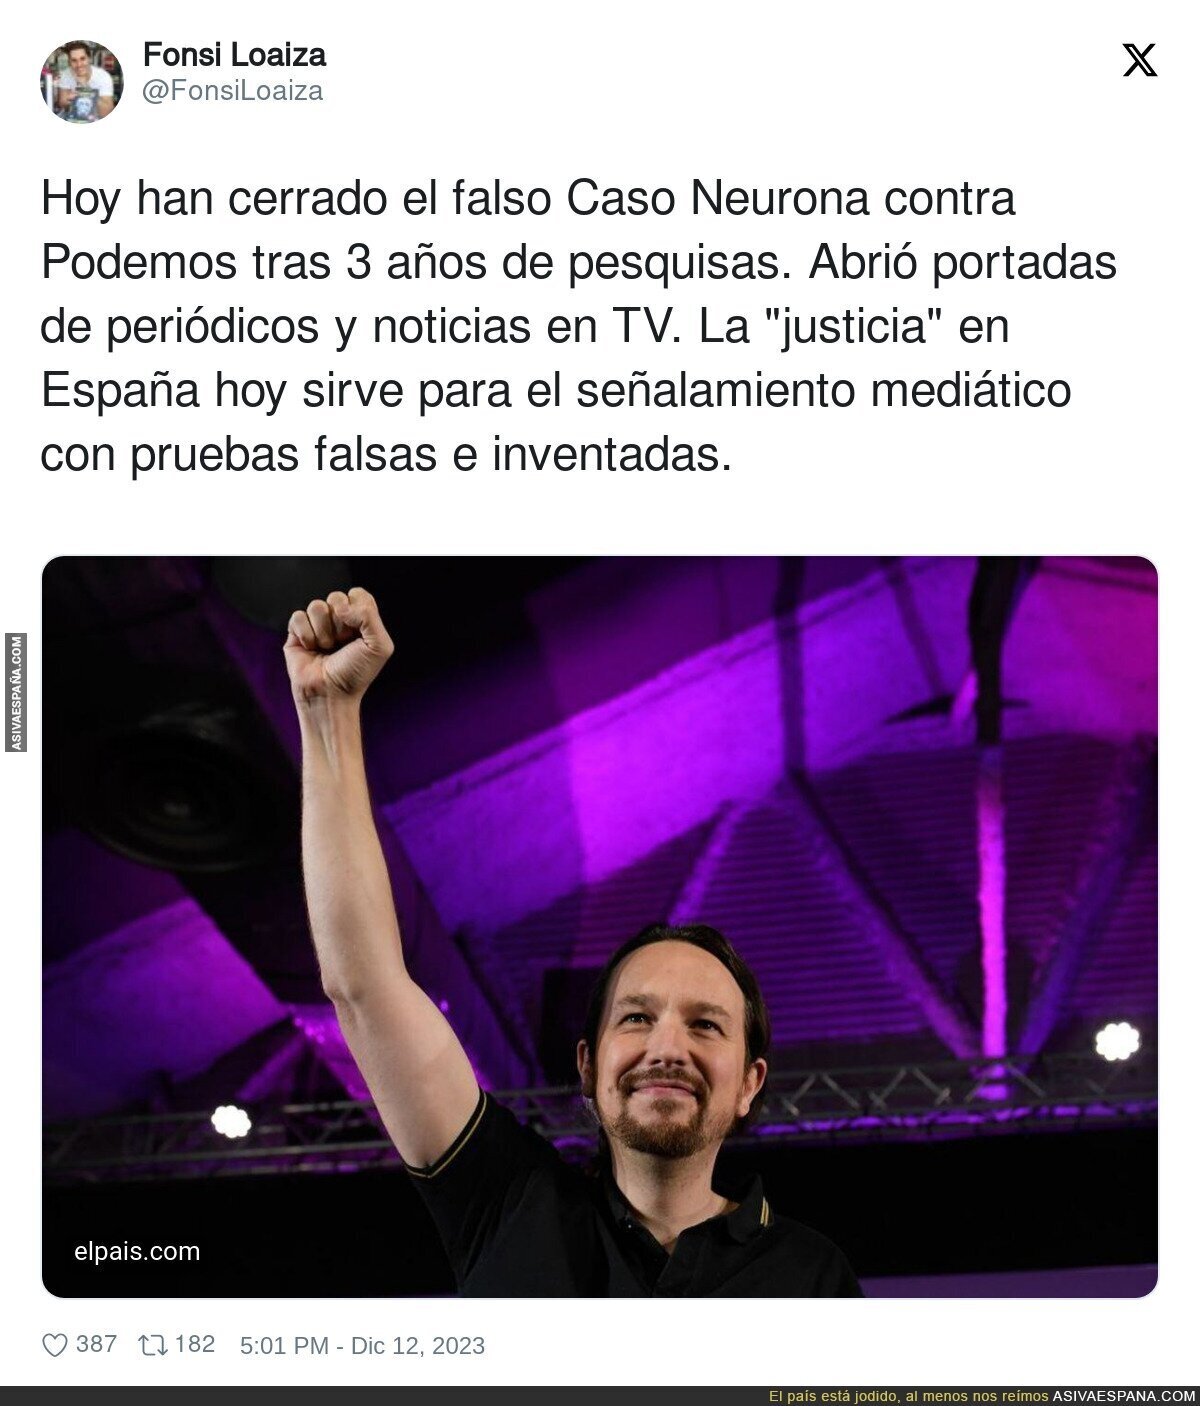 Se confirma la persecución contra Podemos tras archivarse el Caso Neurona